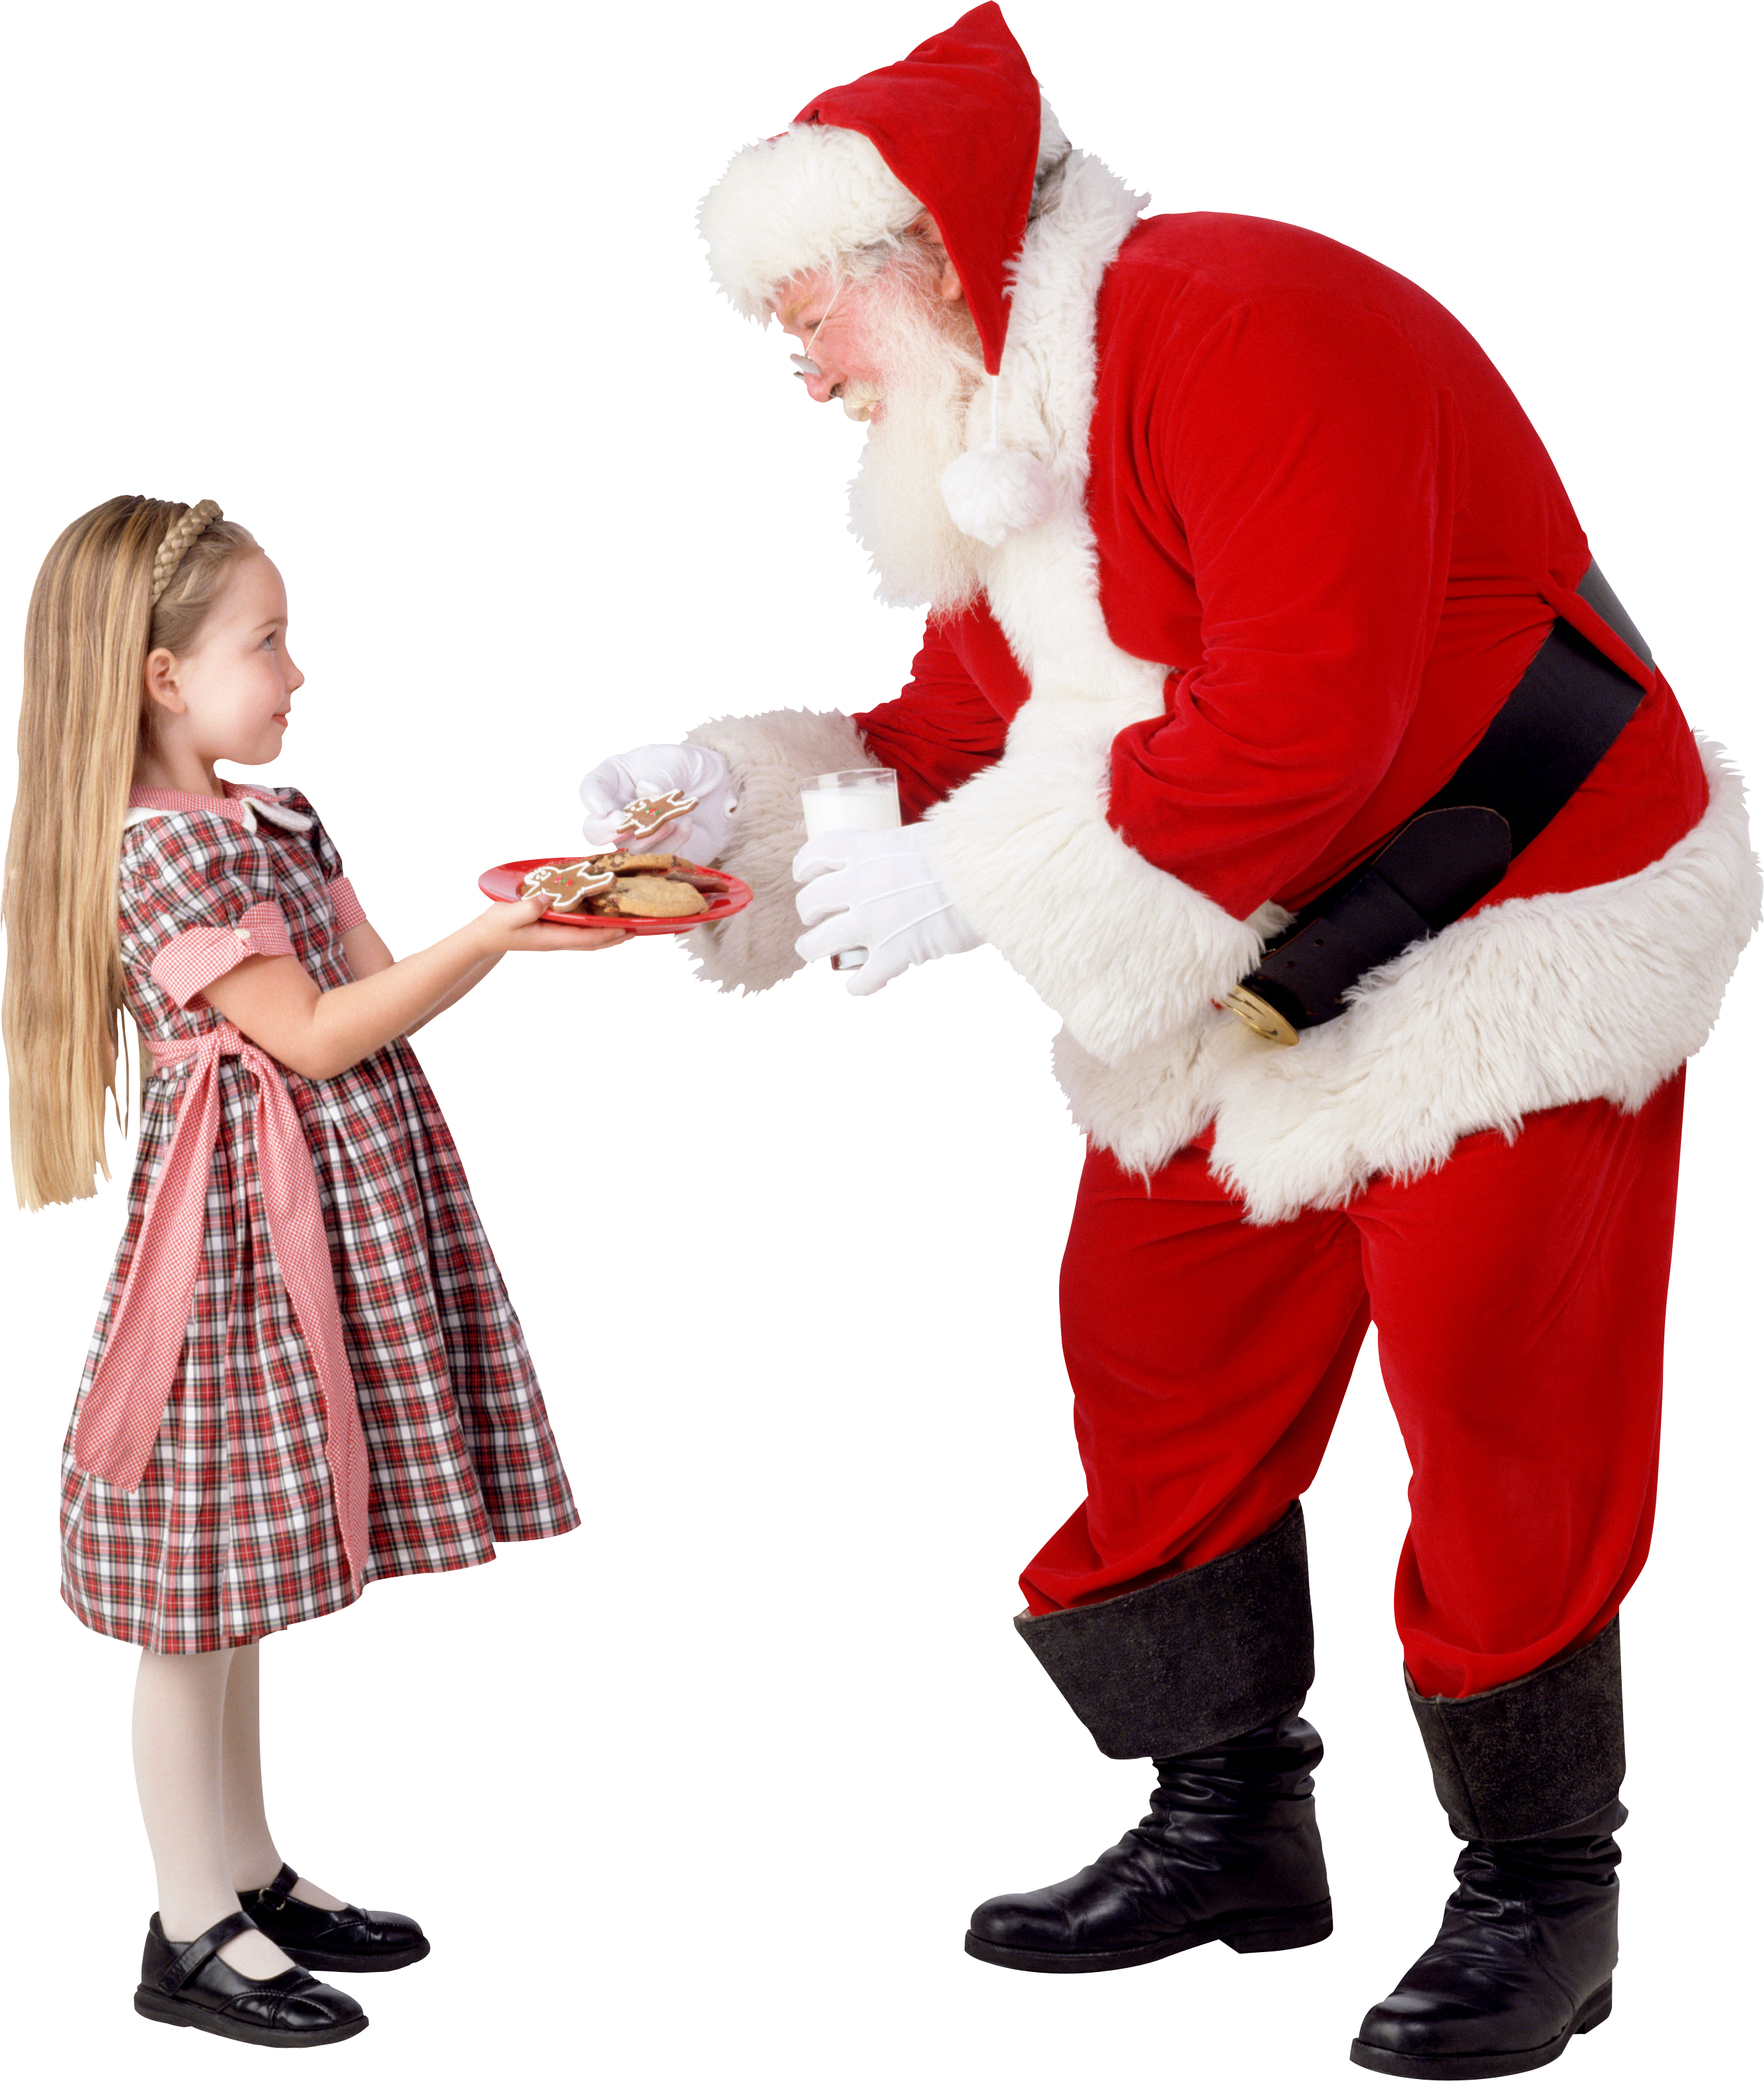 Дед мороз подарил подарок. Дед Мороз дарит подарки. Дед Мороз для детей. Подарки Деда Мороза.